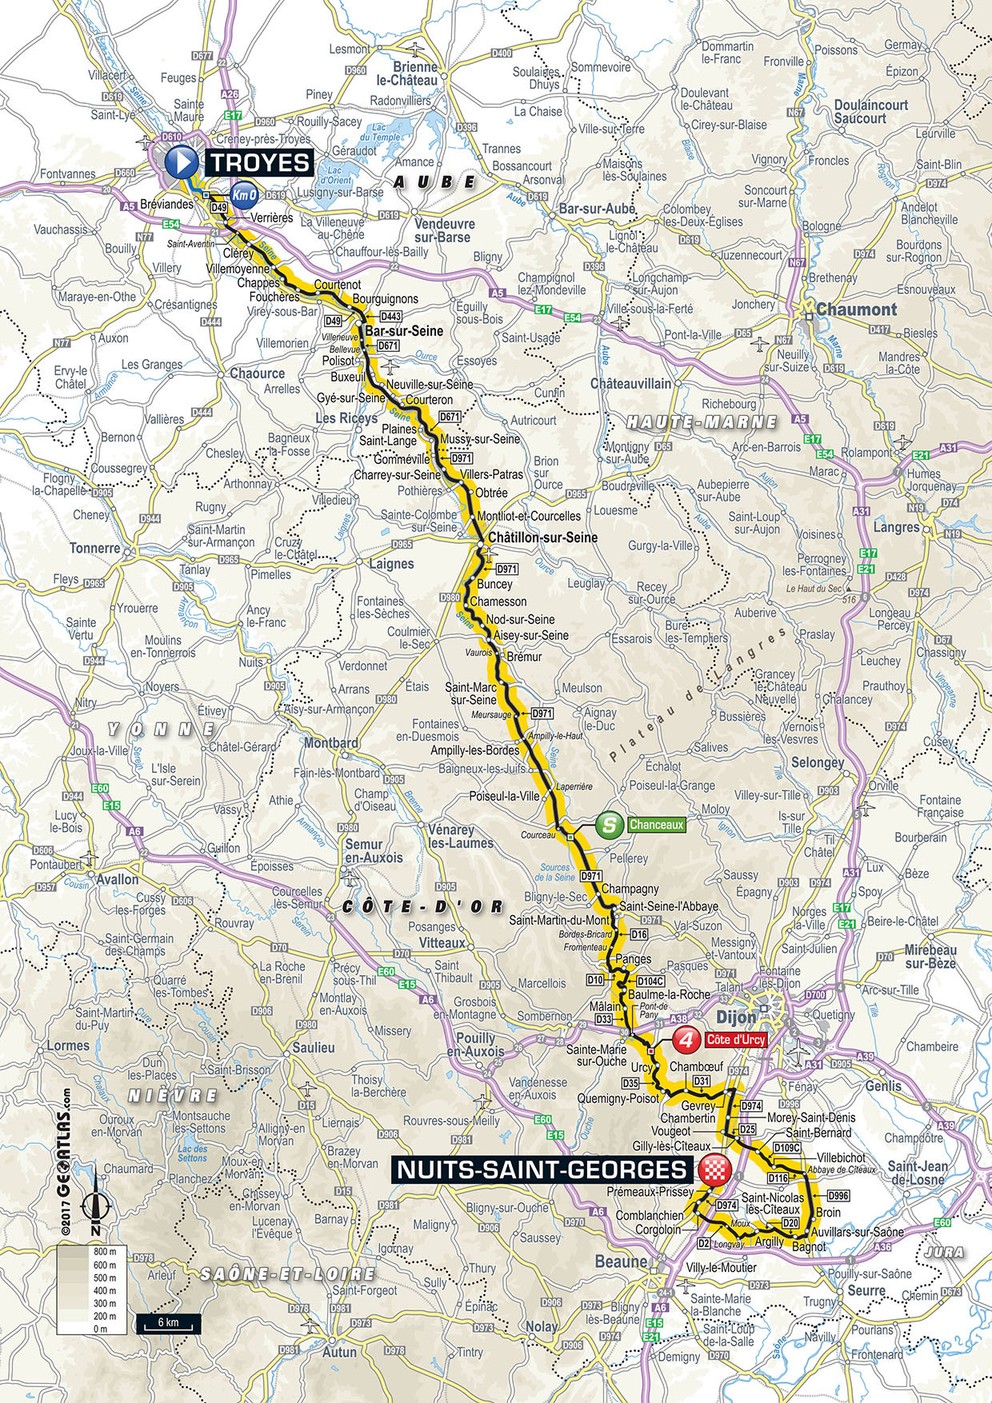 Mapa siedmej etapy Tour de France 2017.